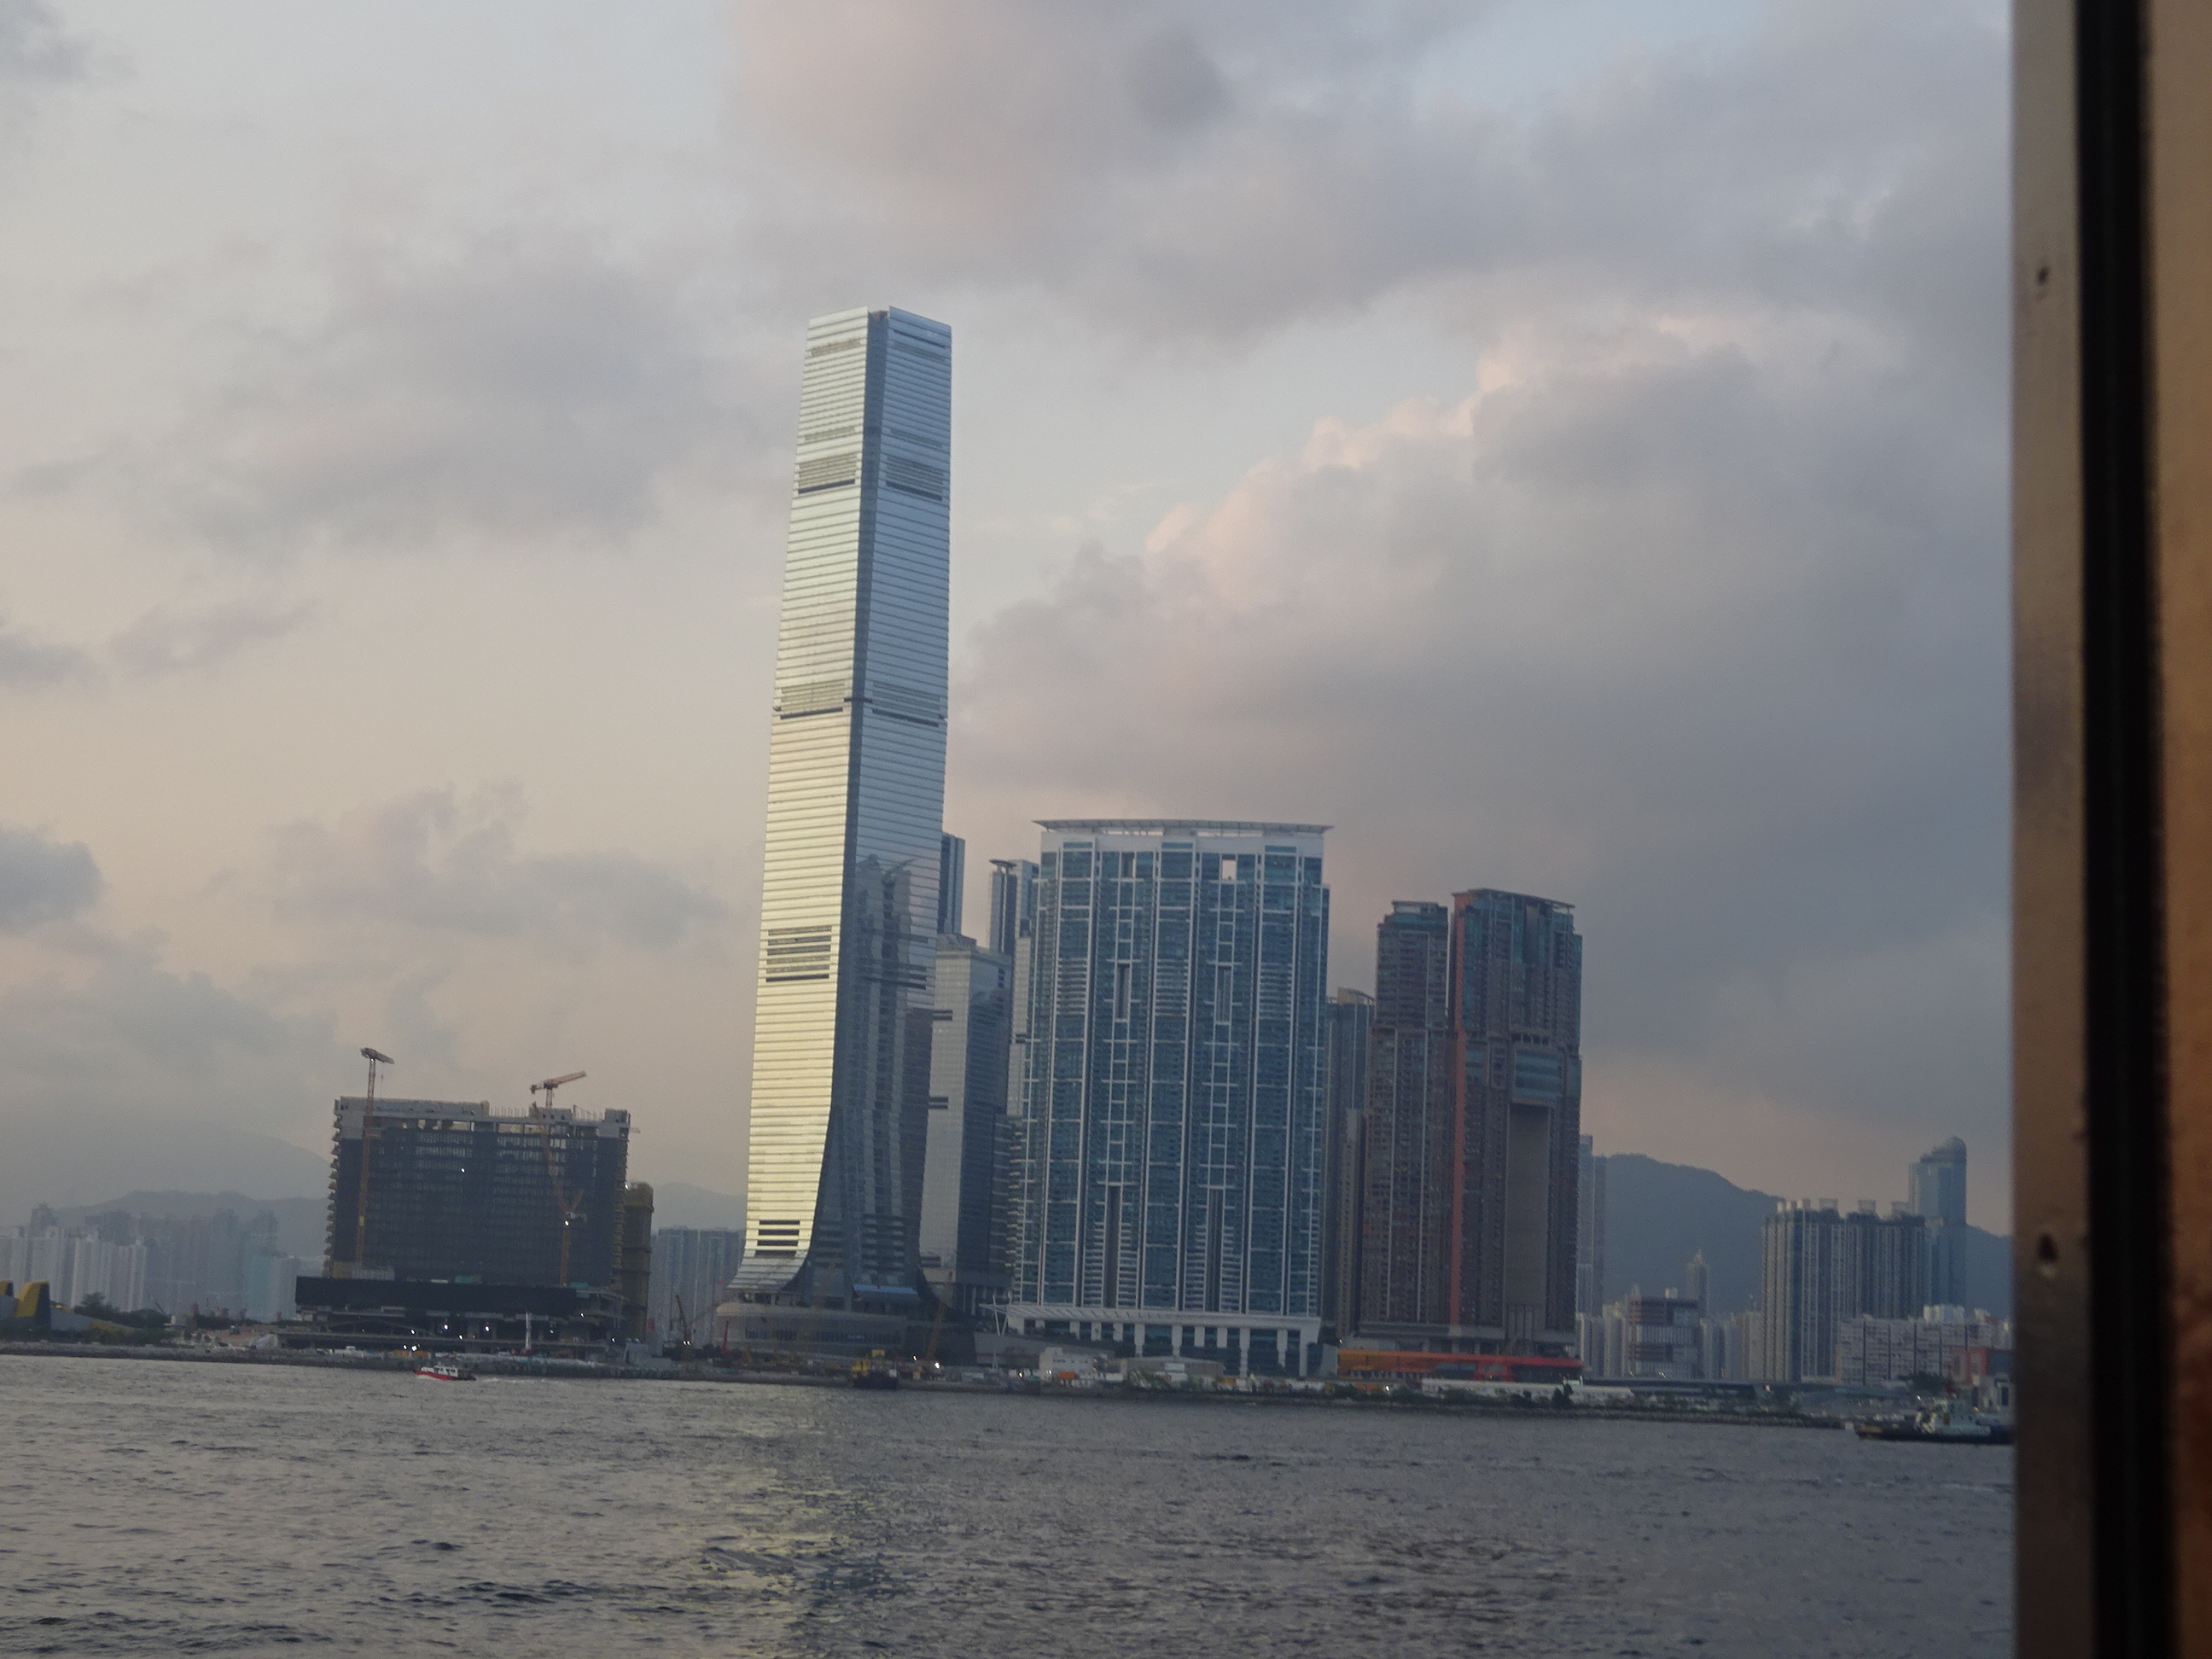 スターフェリー(天星小輪・Star Ferry)からの香港の眺め